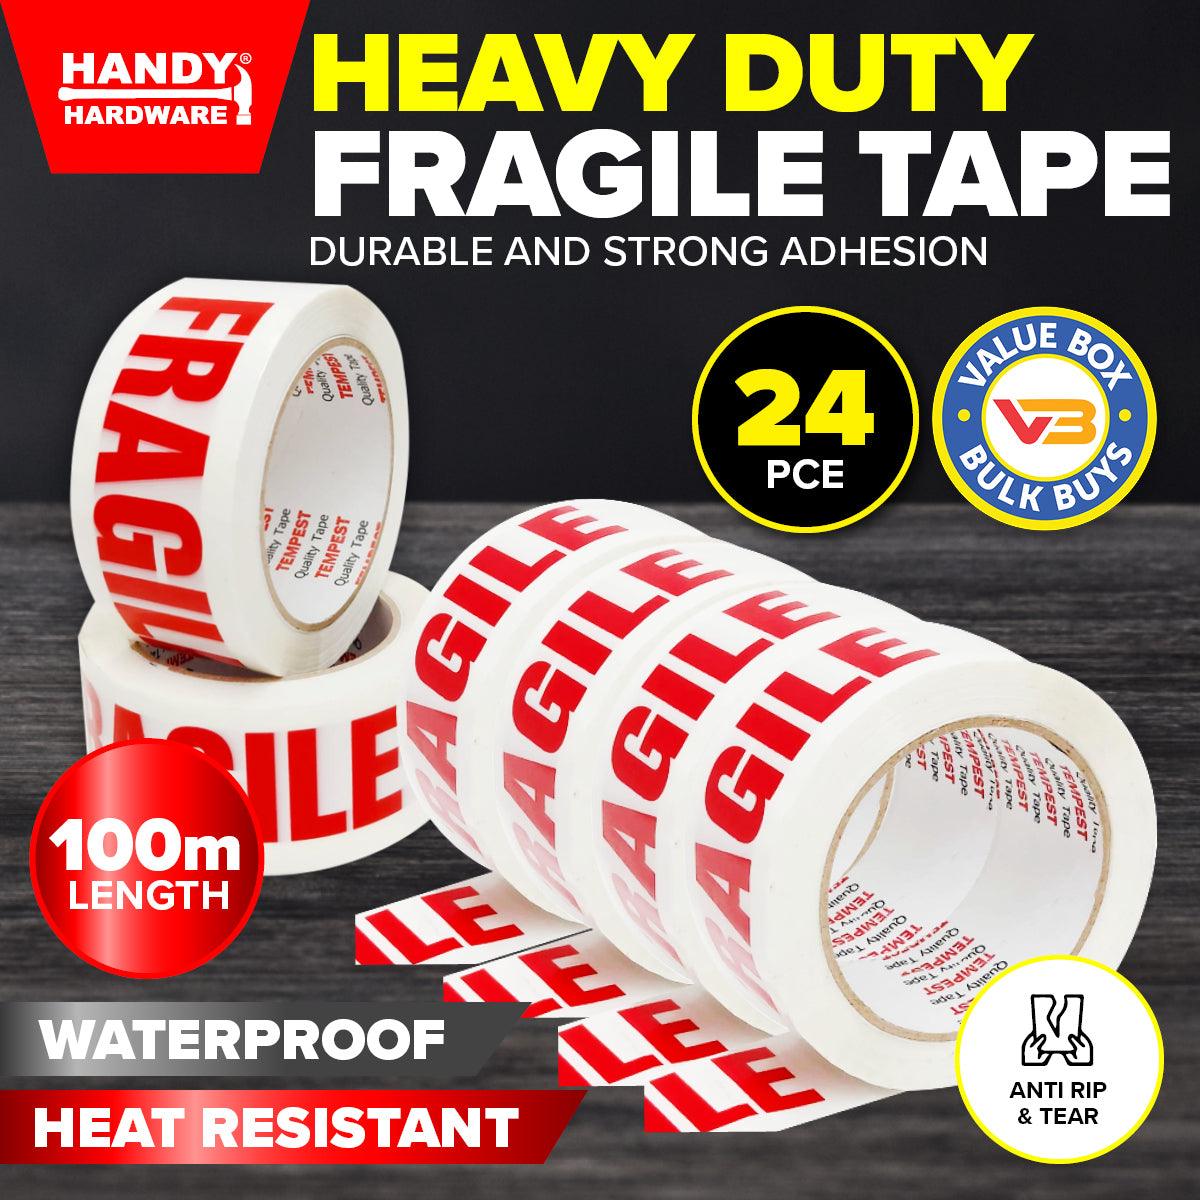 Handy Hardware 24PCE Fragile Tape Waterproof Heat Resistant Flexible 100m